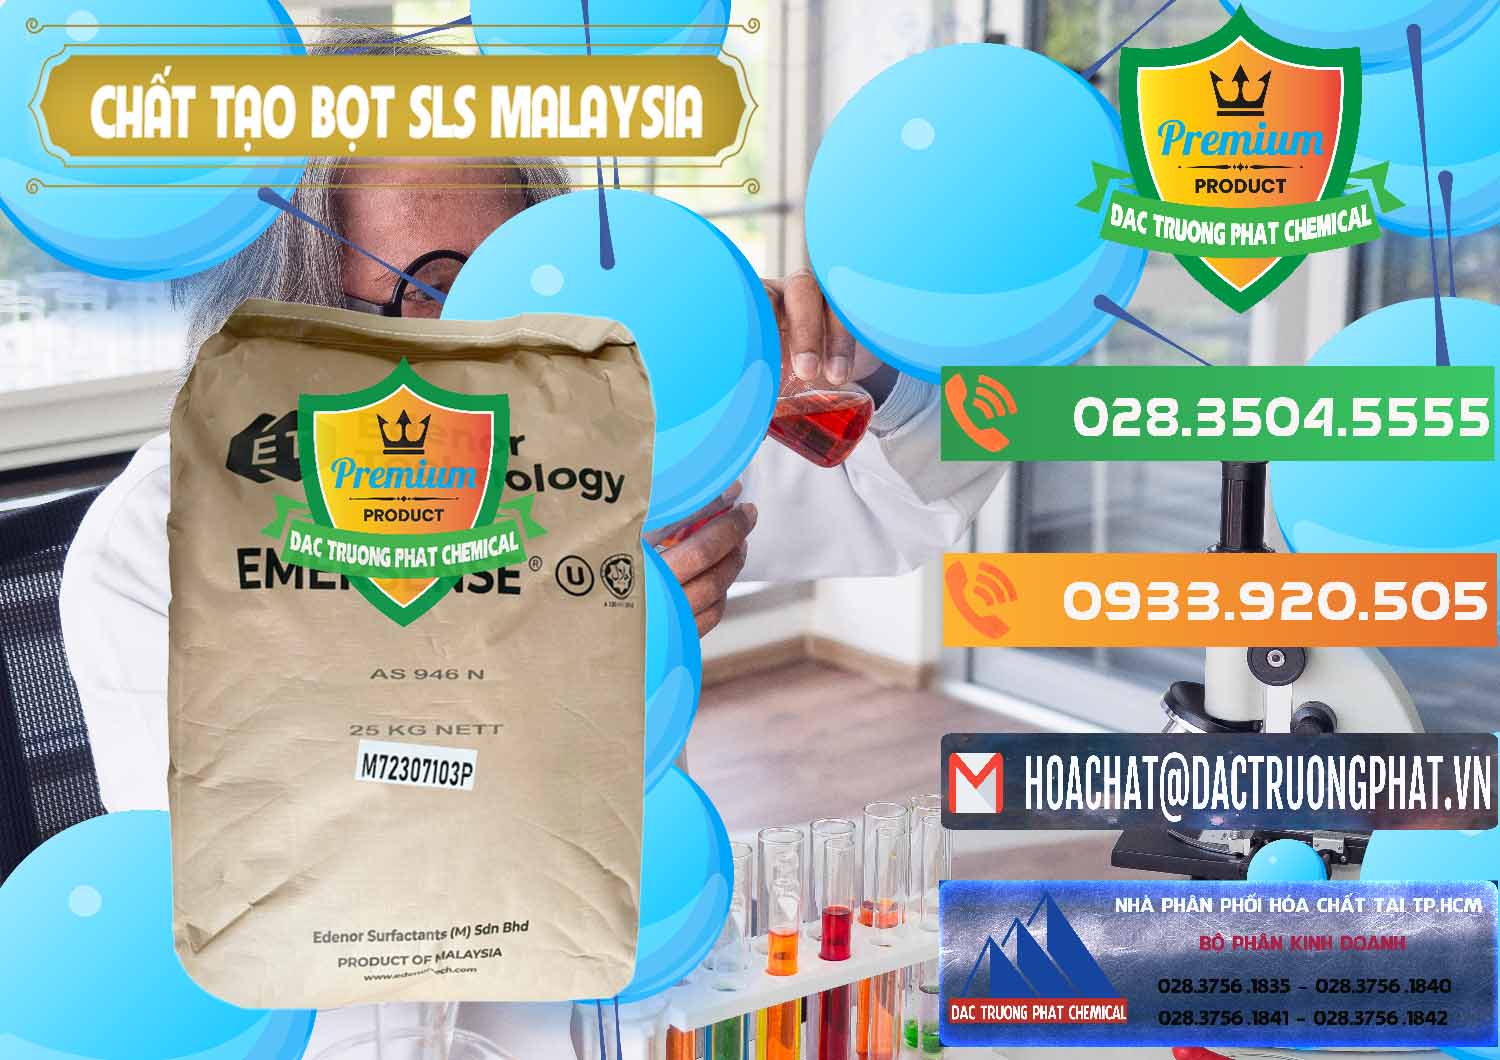 Công ty chuyên kinh doanh và bán Chất Tạo Bọt SLS Emersense Mã Lai Malaysia - 0381 - Nơi chuyên bán & cung cấp hóa chất tại TP.HCM - hoachatxulynuoc.com.vn